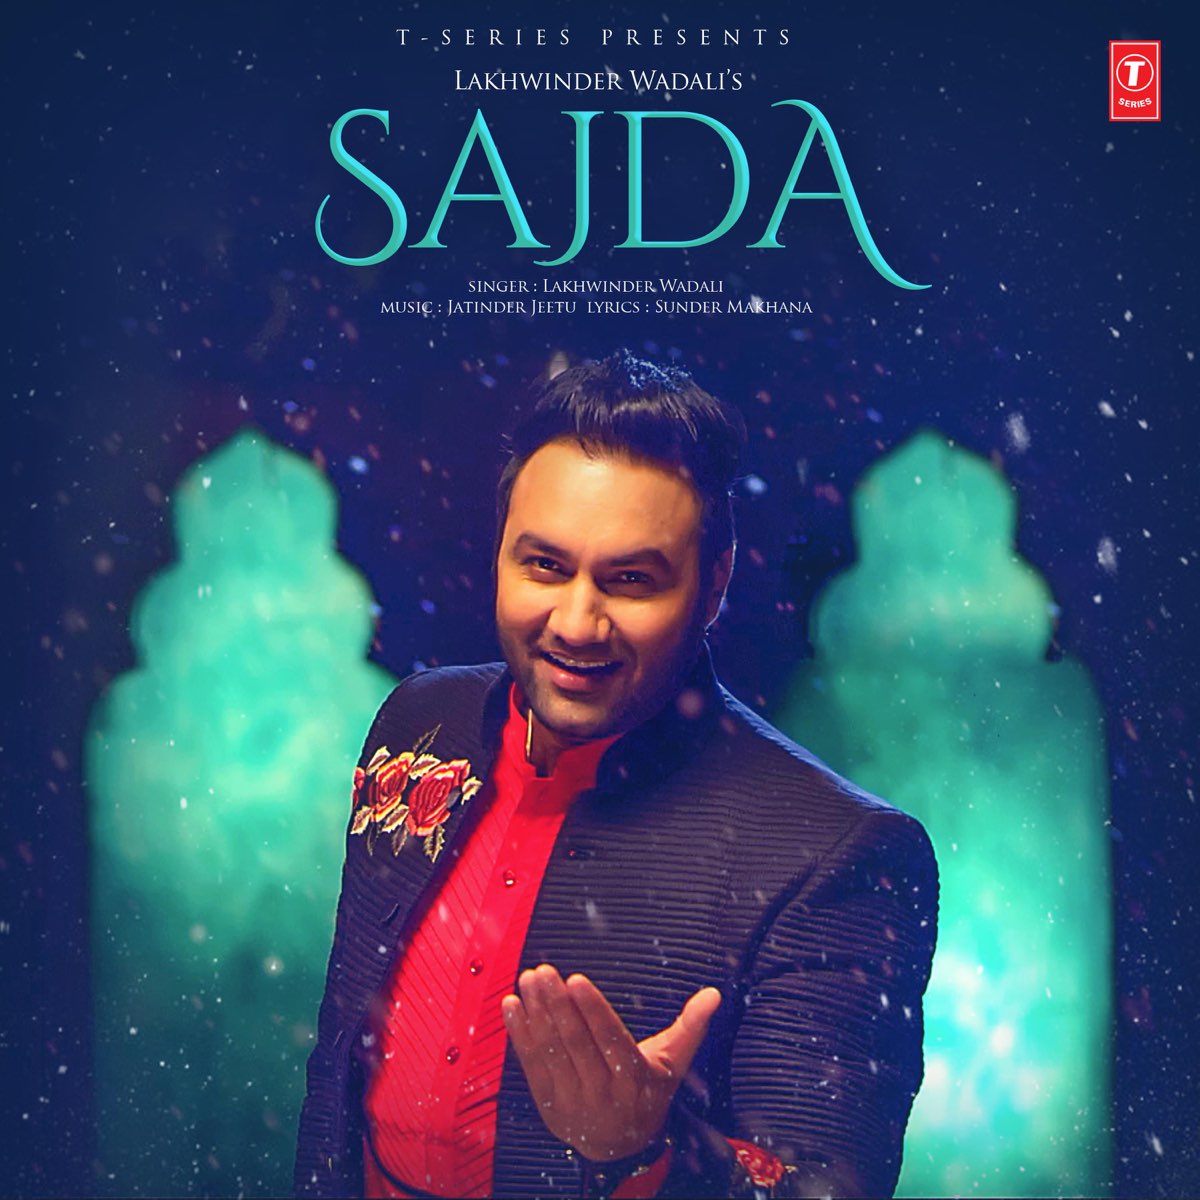 Sajda - Single by Lakhwinder Wadali & Jatinder Jeetu on Apple Music